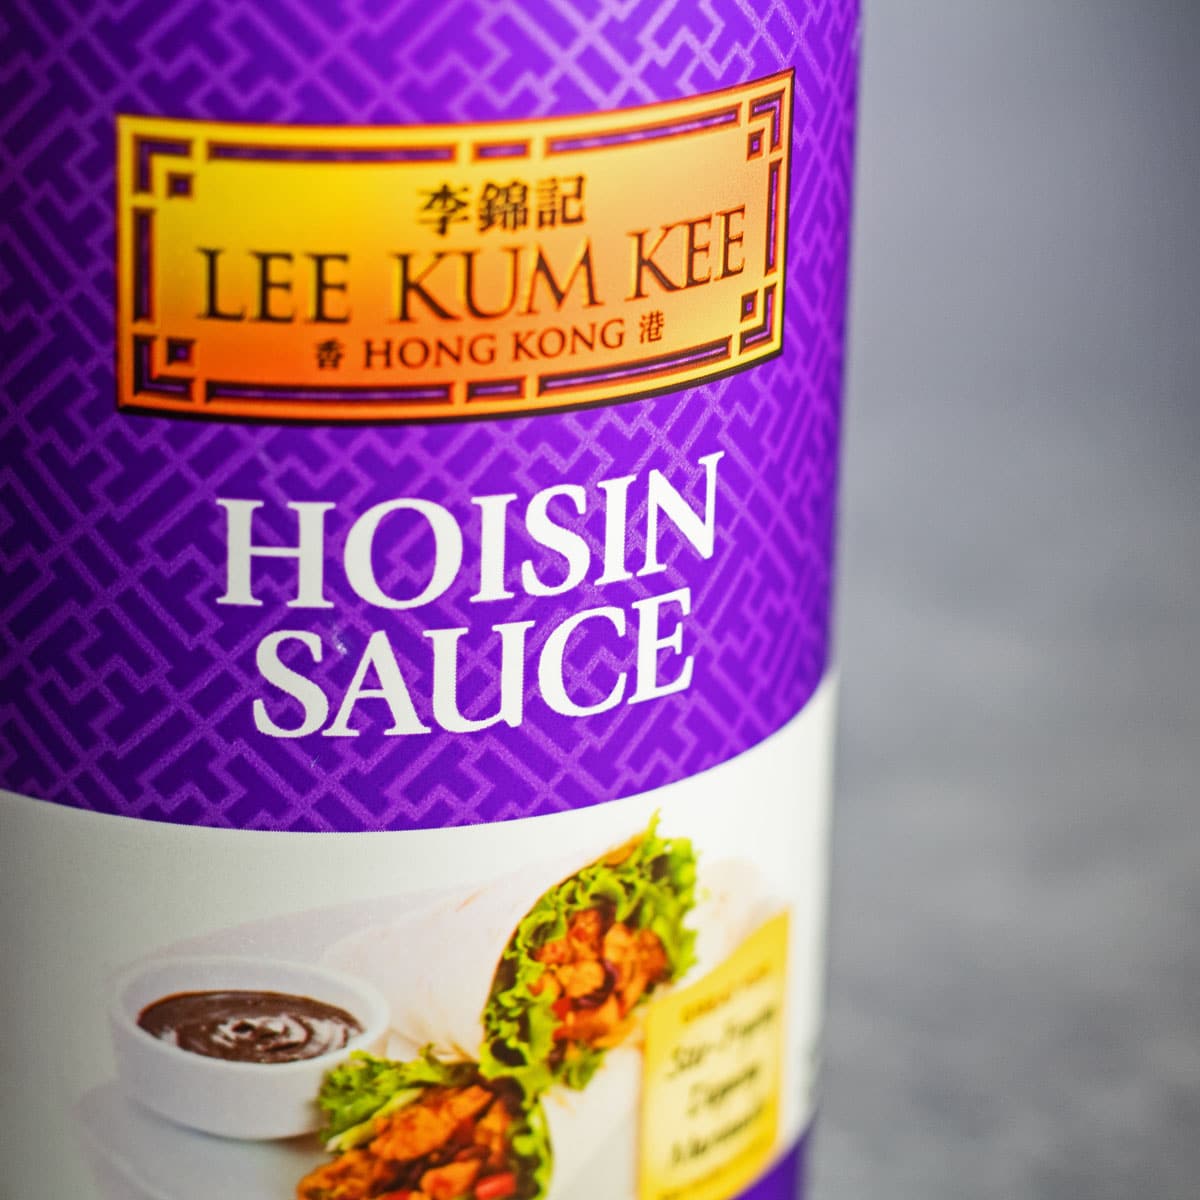 La sauce hoisin remplace l'image de la sauce hoisin en bouteille.